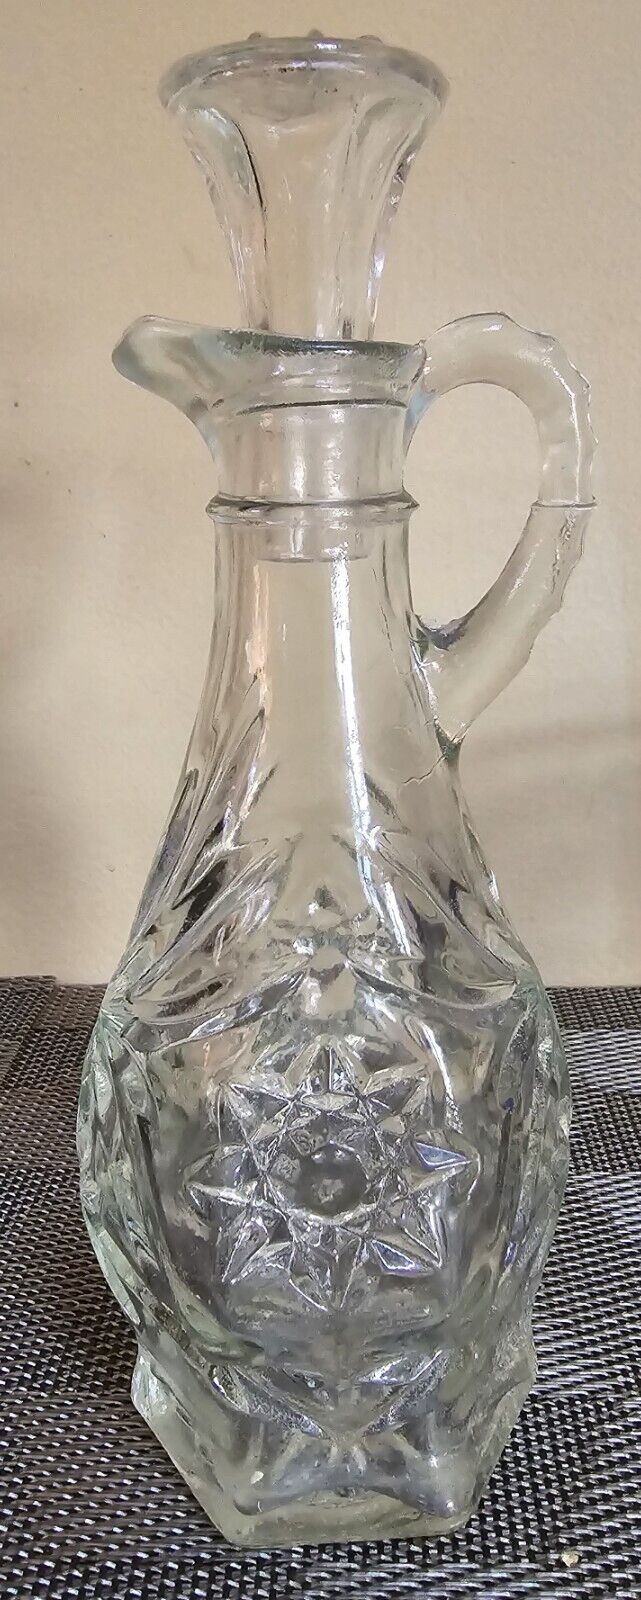 Vintage Cut Glass Oil & Vinegar Cruet Dispenser Bottle with Stopper